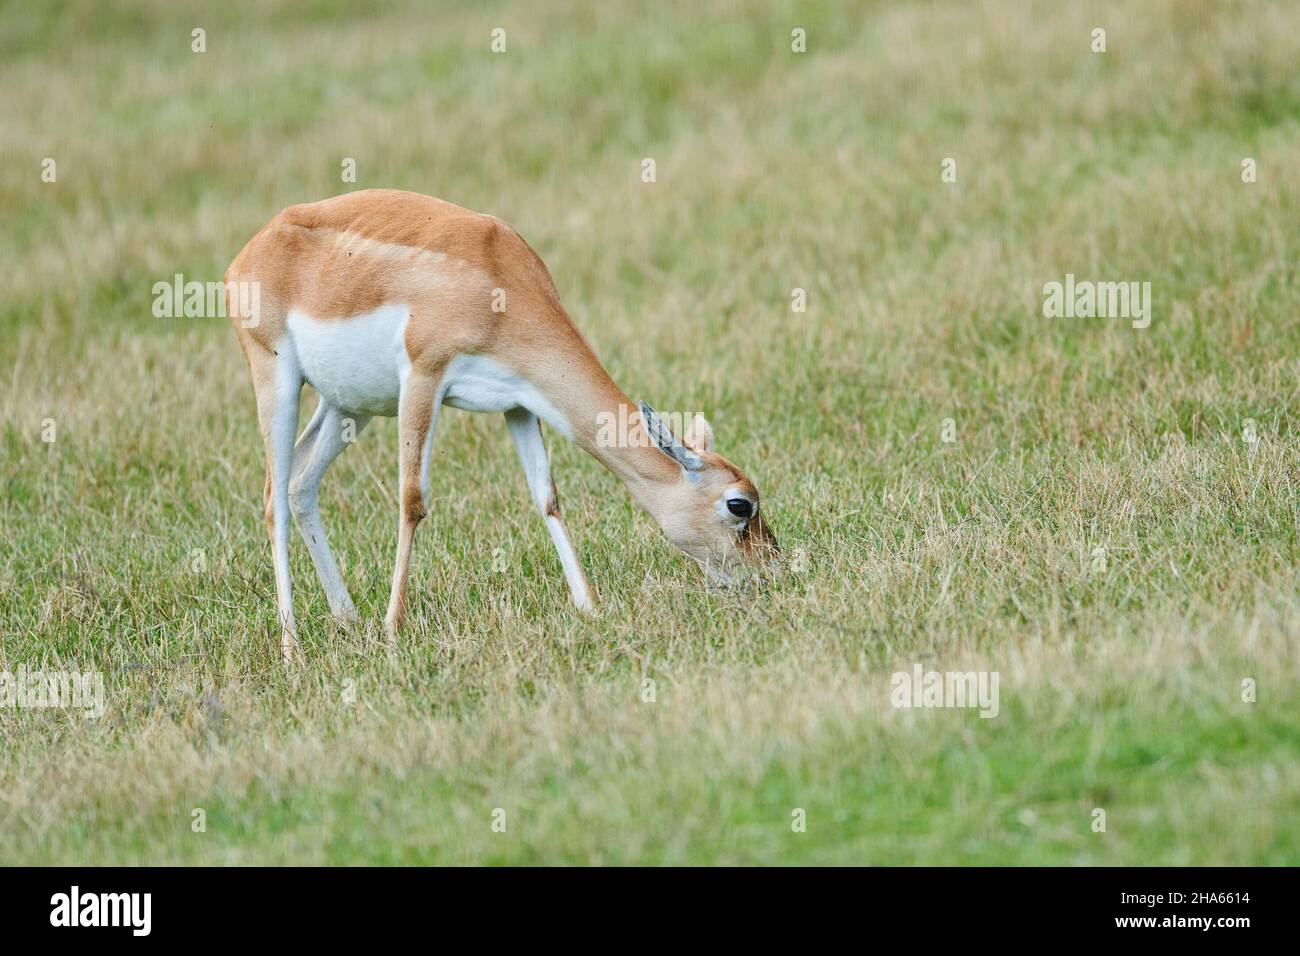 antilope à talon noir (aepyceros melampus),prairie,sur les côtés,debout Banque D'Images